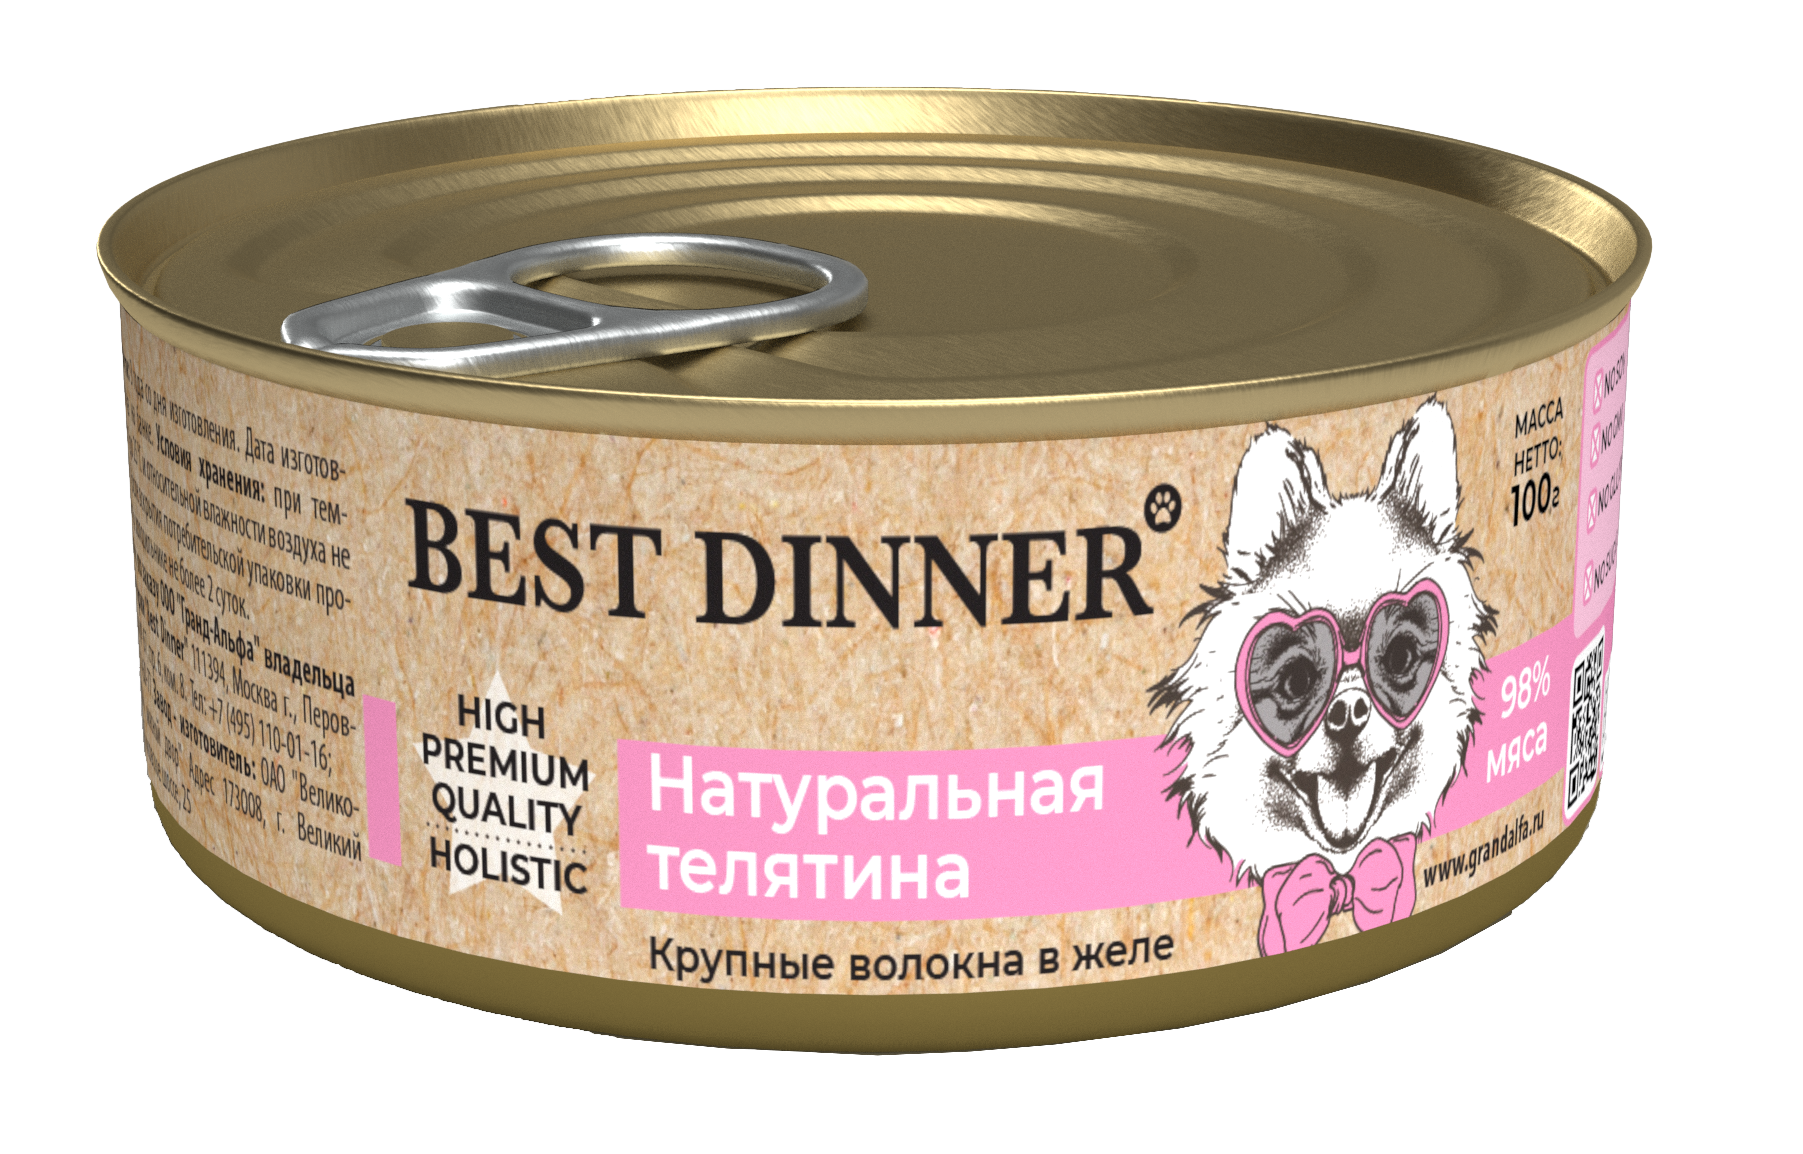 Консервы Best Dinner High Premium для собак. Натуральная Телятина 100г